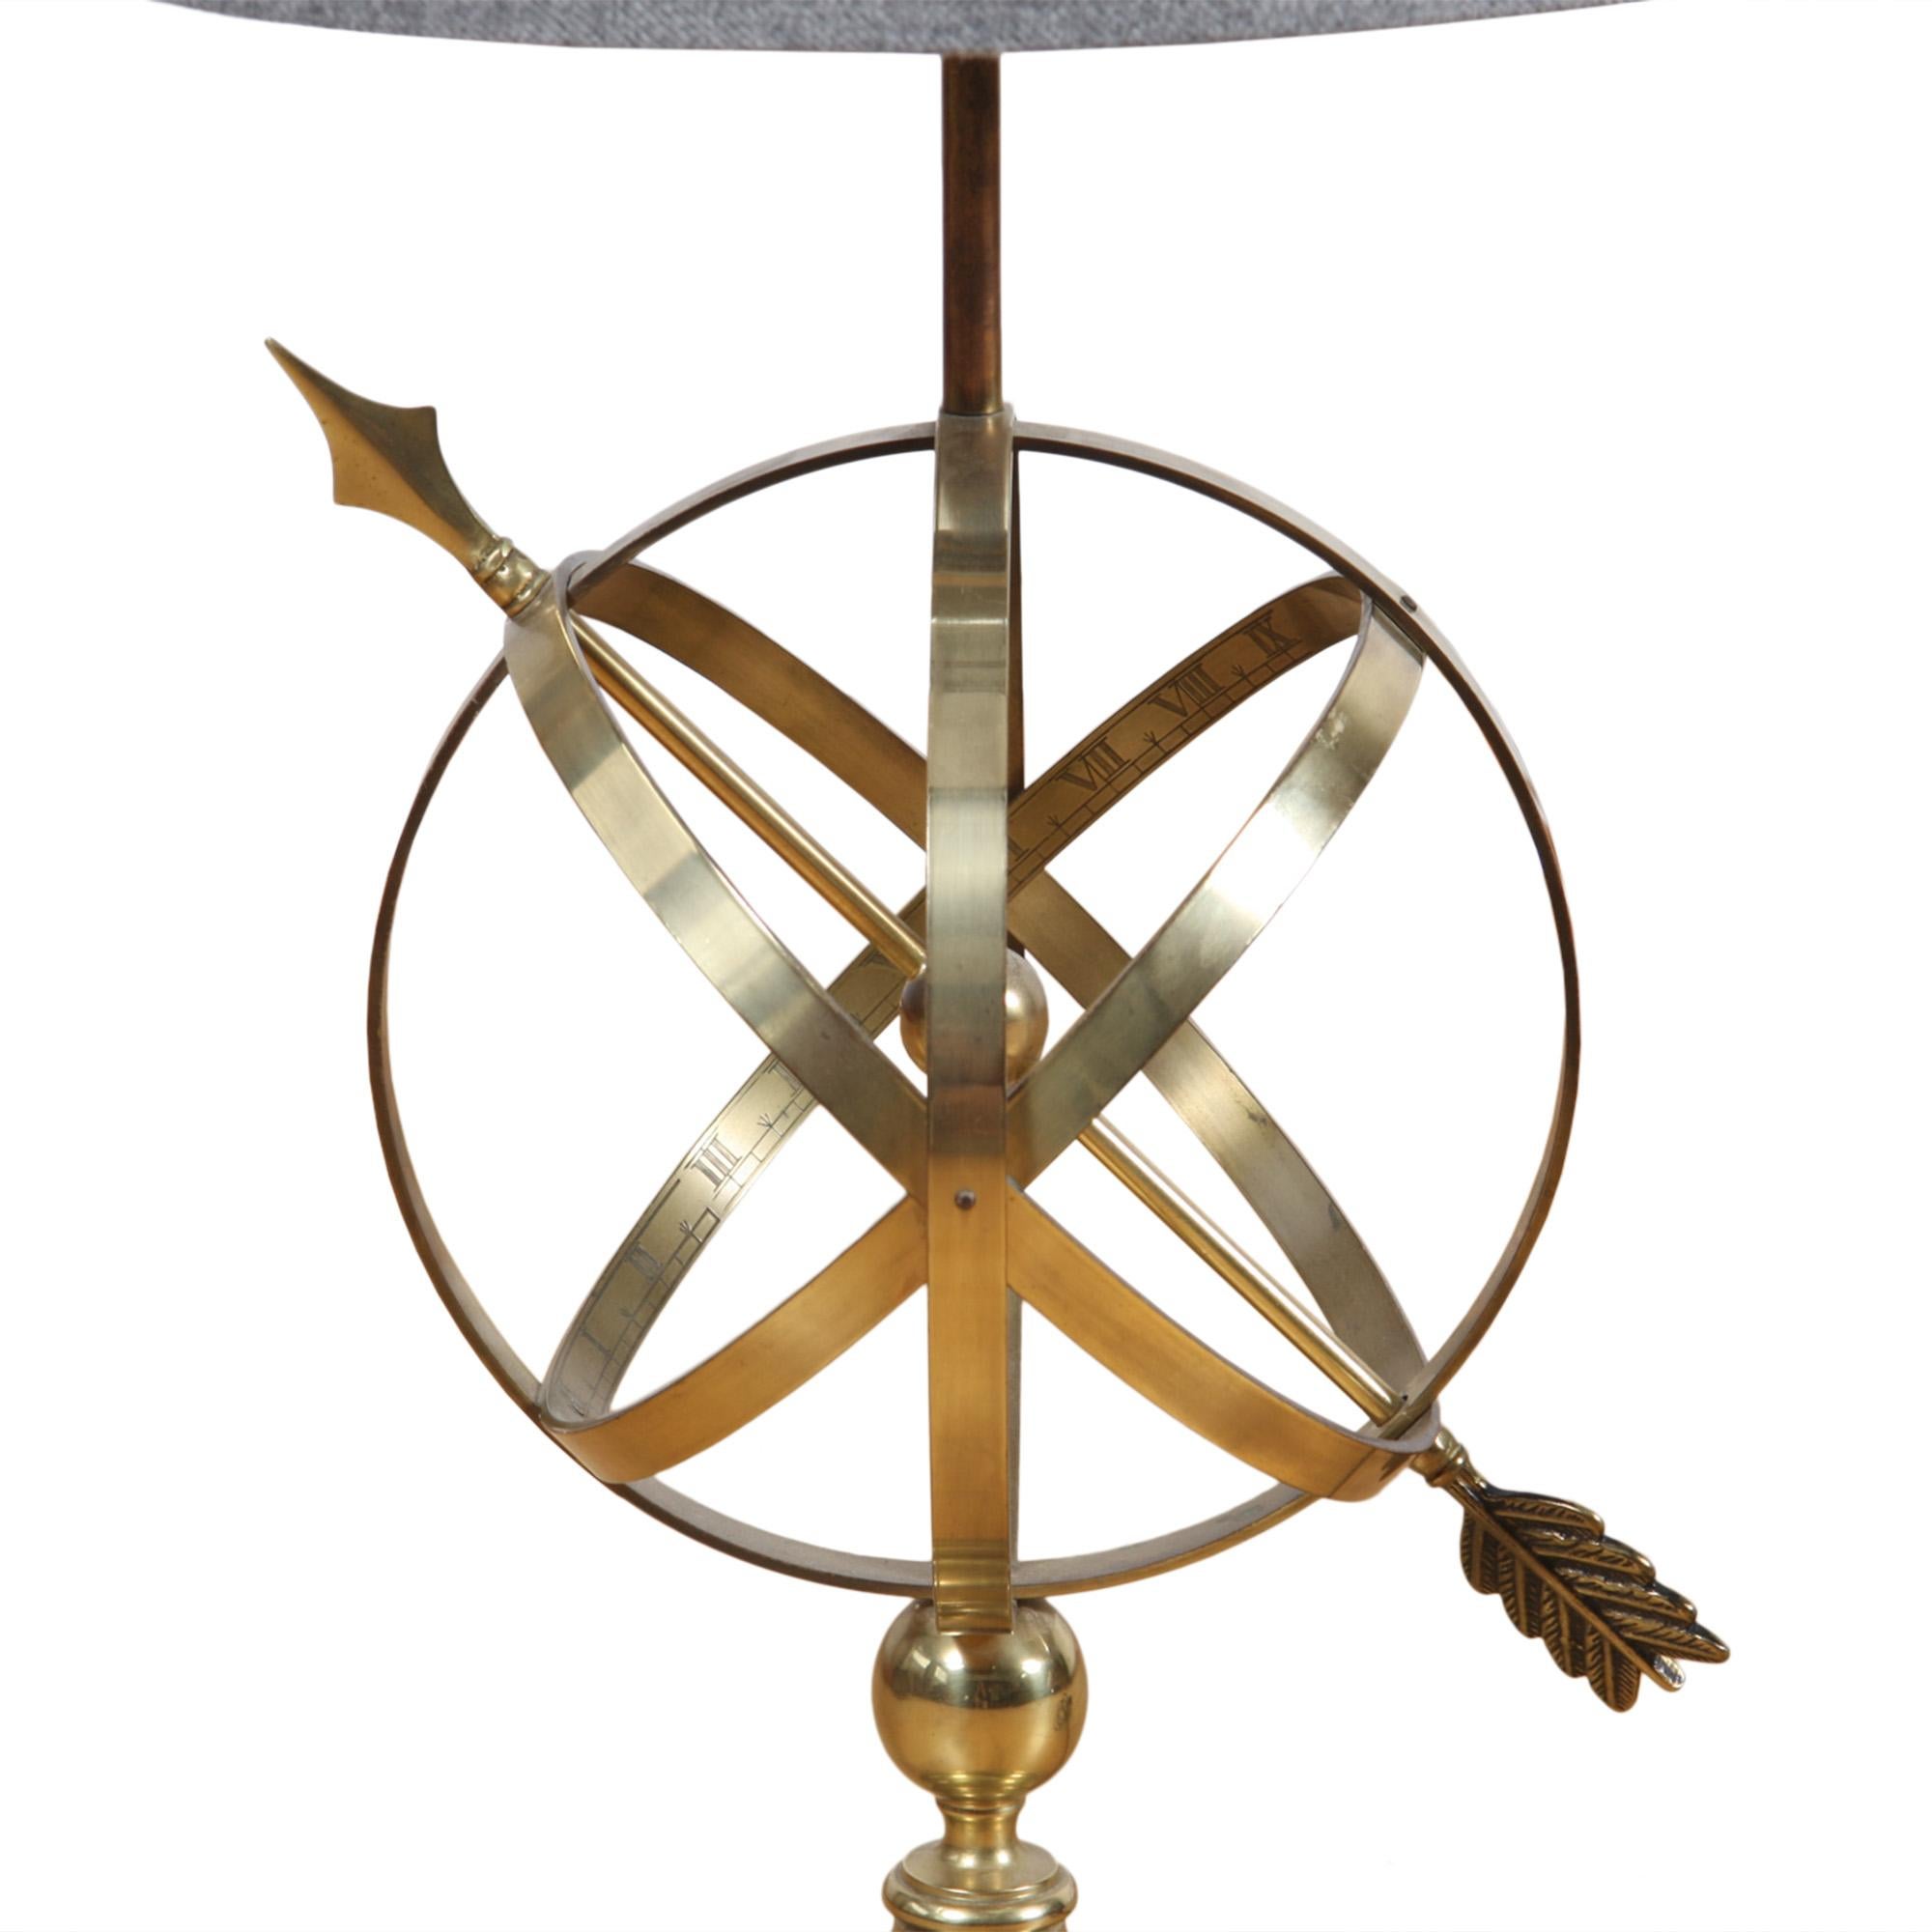 Die auch als Äquatorialsonnenuhr bekannte, von den alten Griechen erfundene Armillarlinie ist ein Modell des Universums mit der Erde im Zentrum.

Diese tolle Vintage-Tischlampe wurde in den 1950er Jahren in England hergestellt. 

Bitte sehen Sie